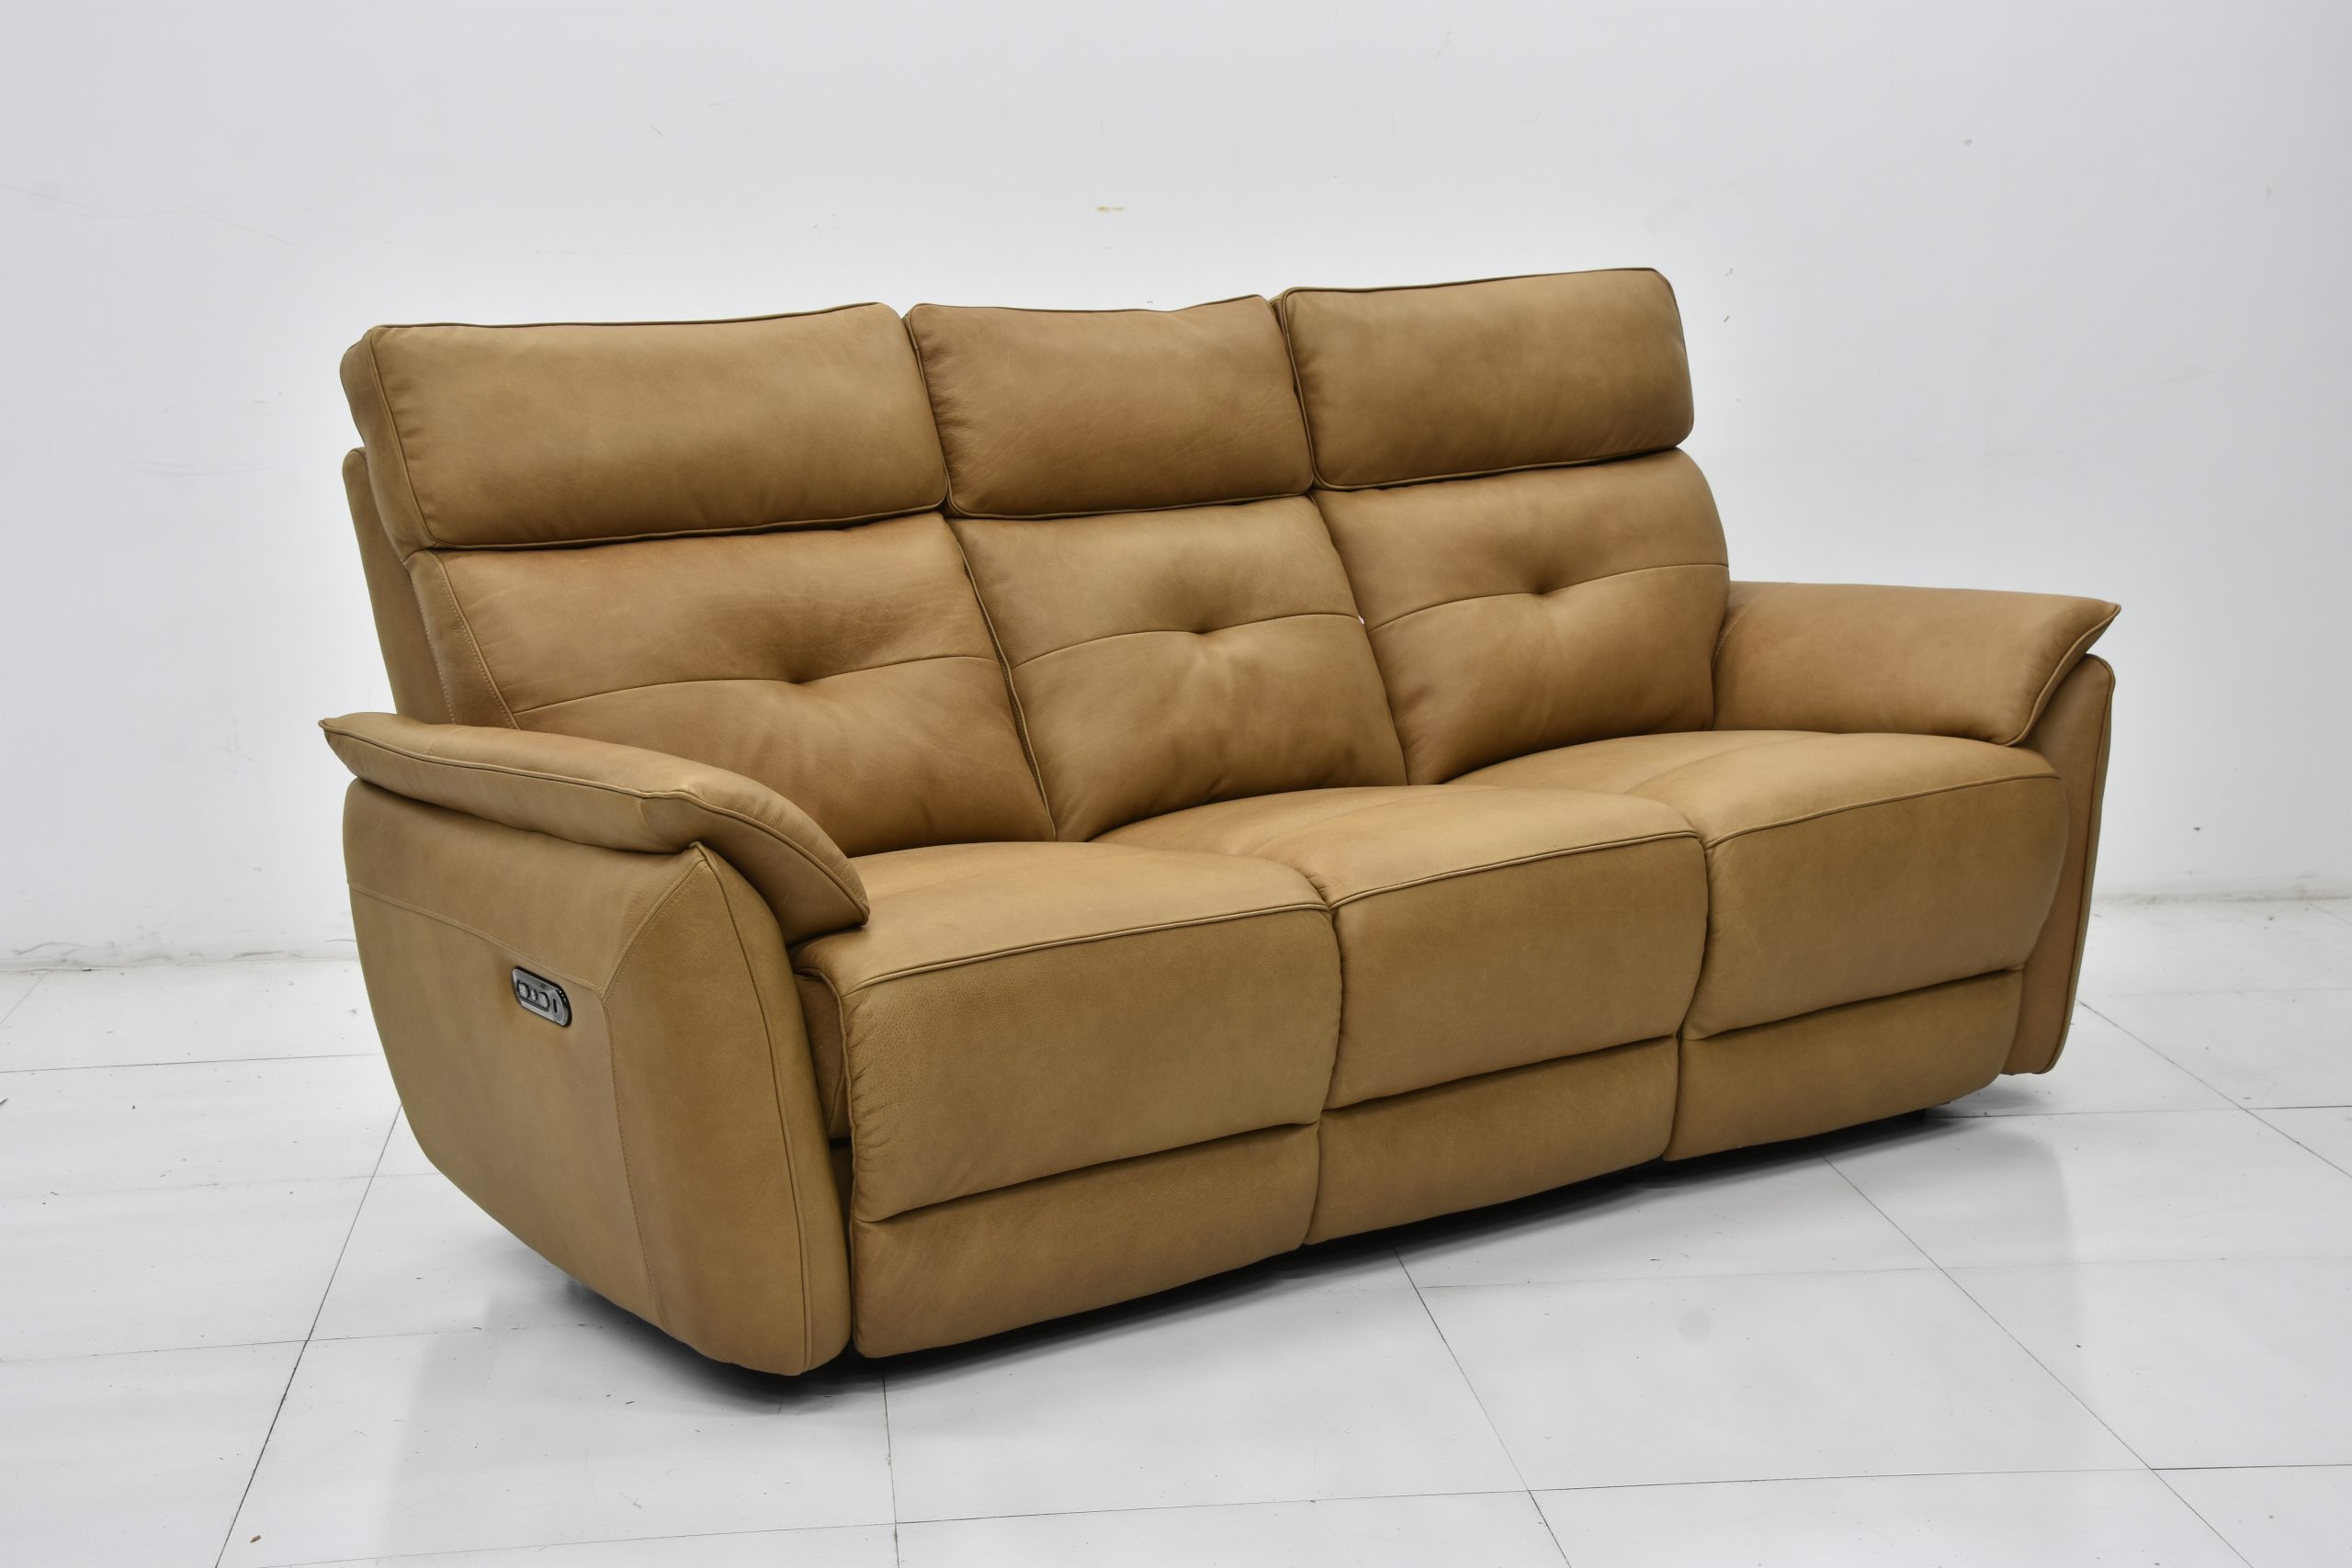 98 kensington leather sofa